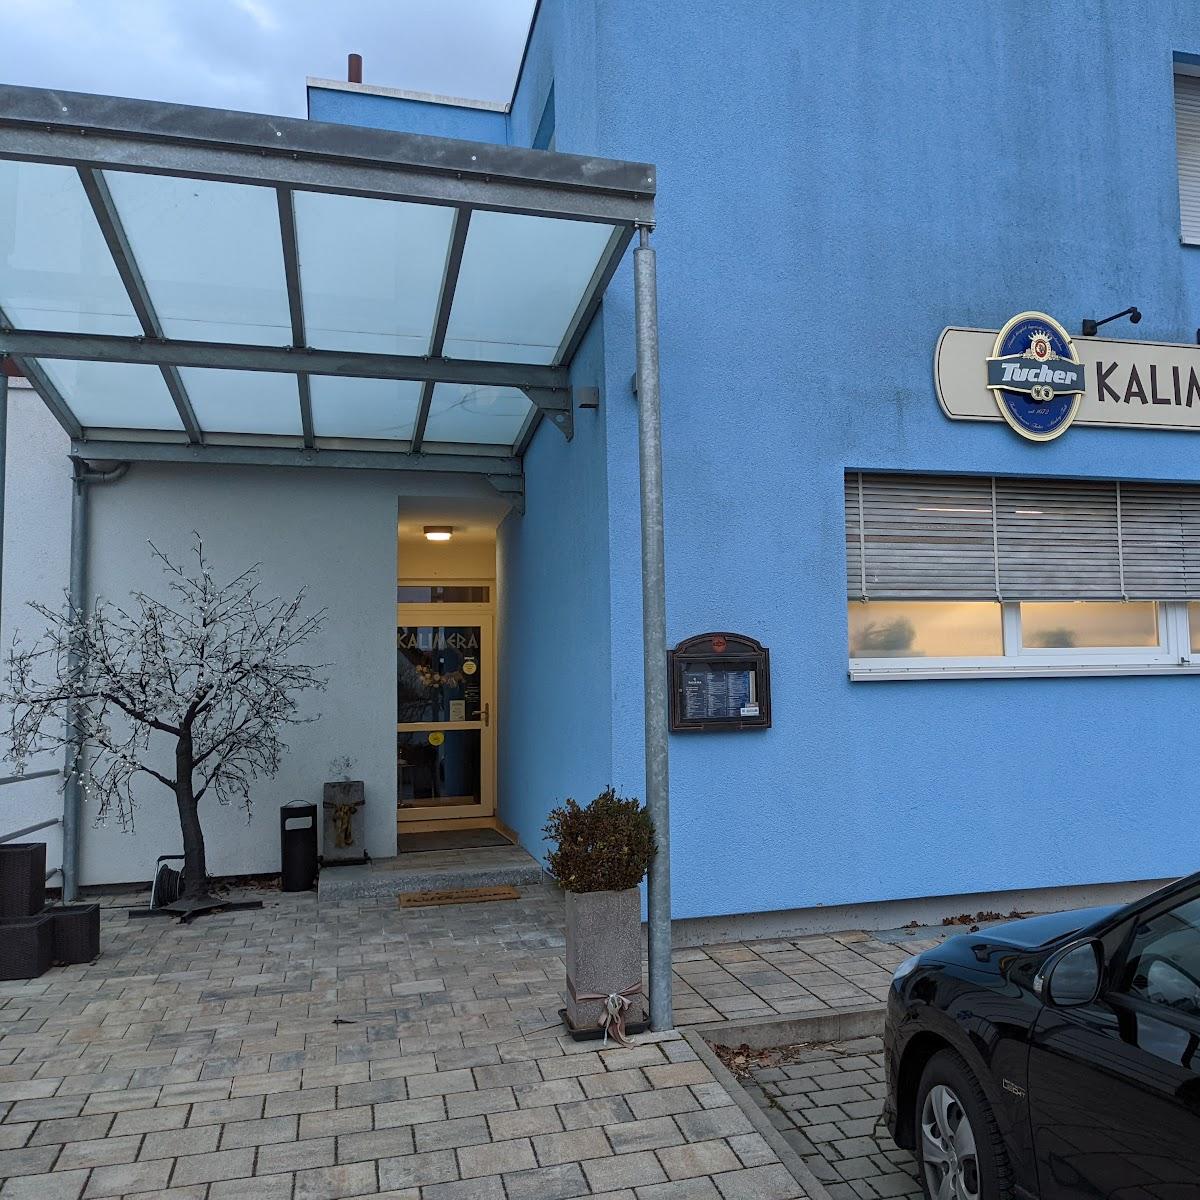 Restaurant "Kalimera" in Schwaig bei Nürnberg